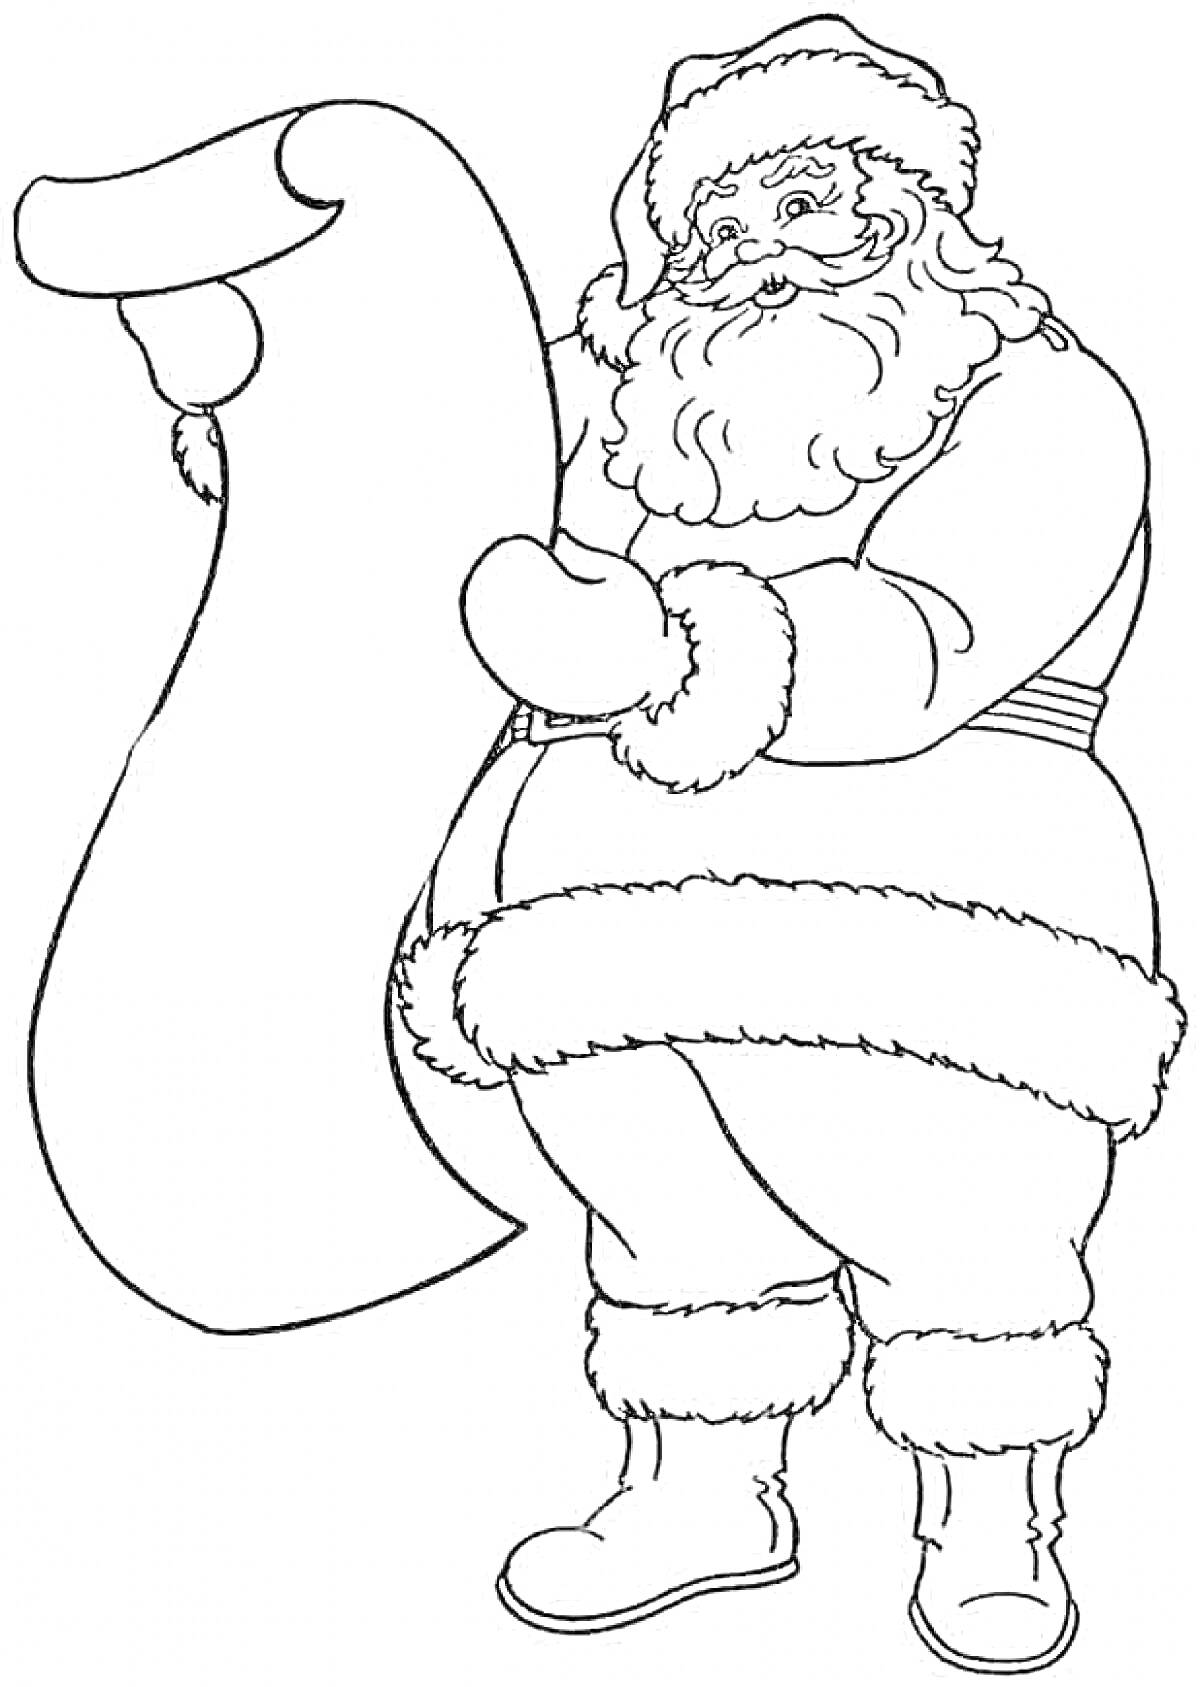 Раскраска Санта Клаус с длинным списком